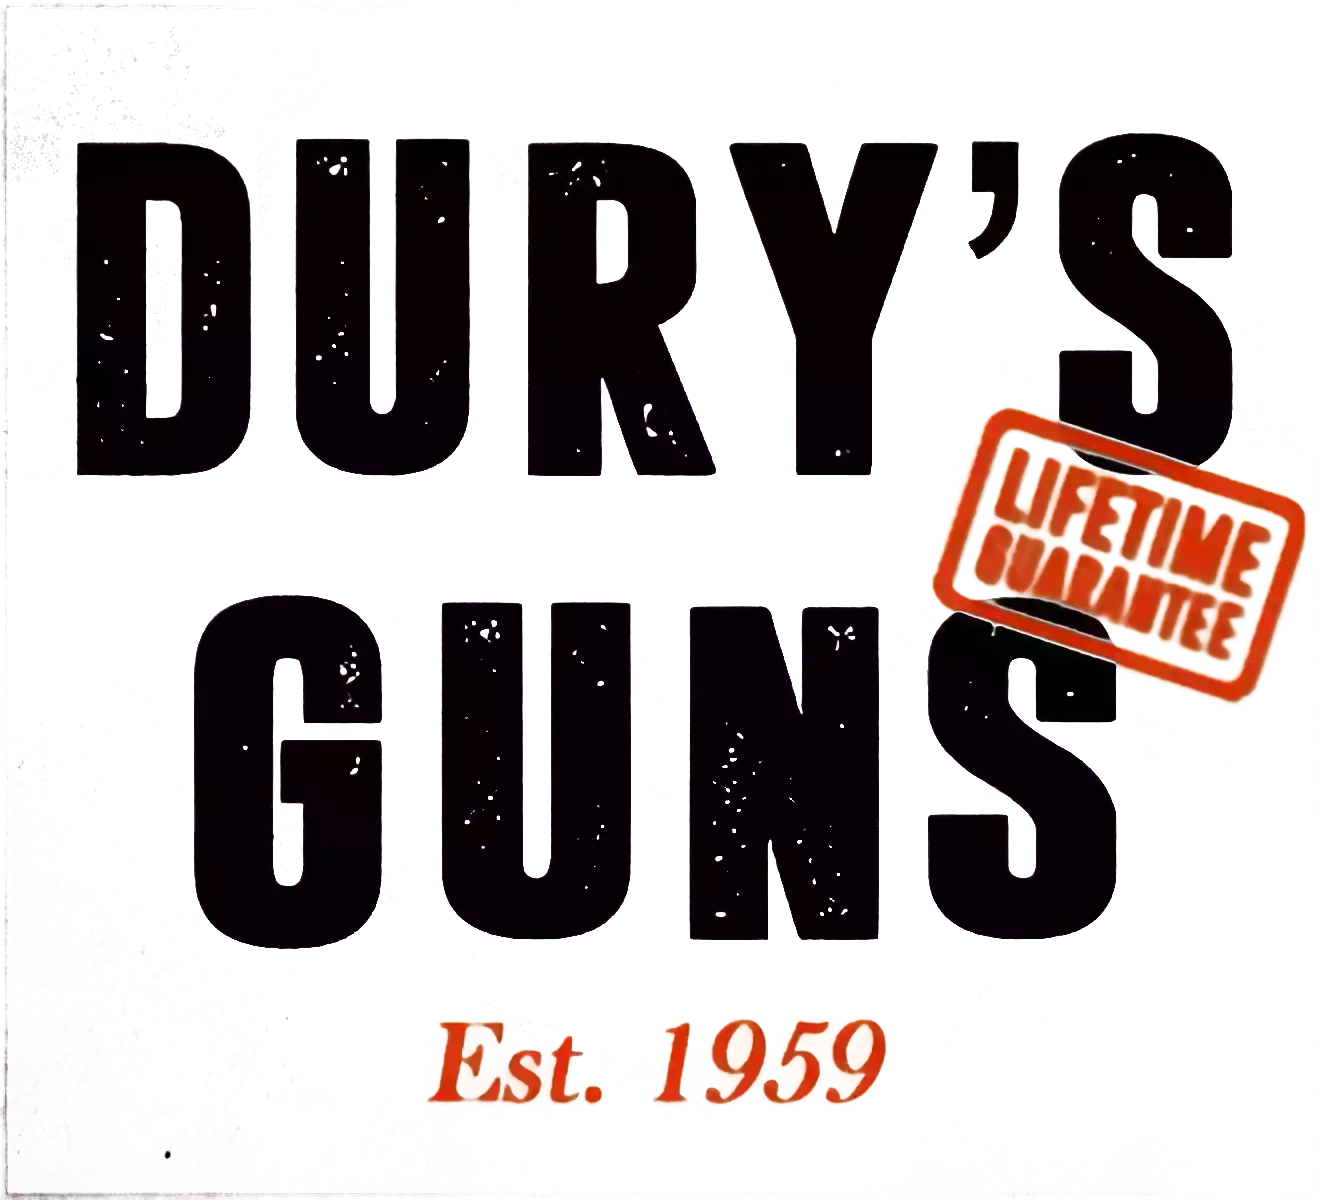 Dury's Gun Shop